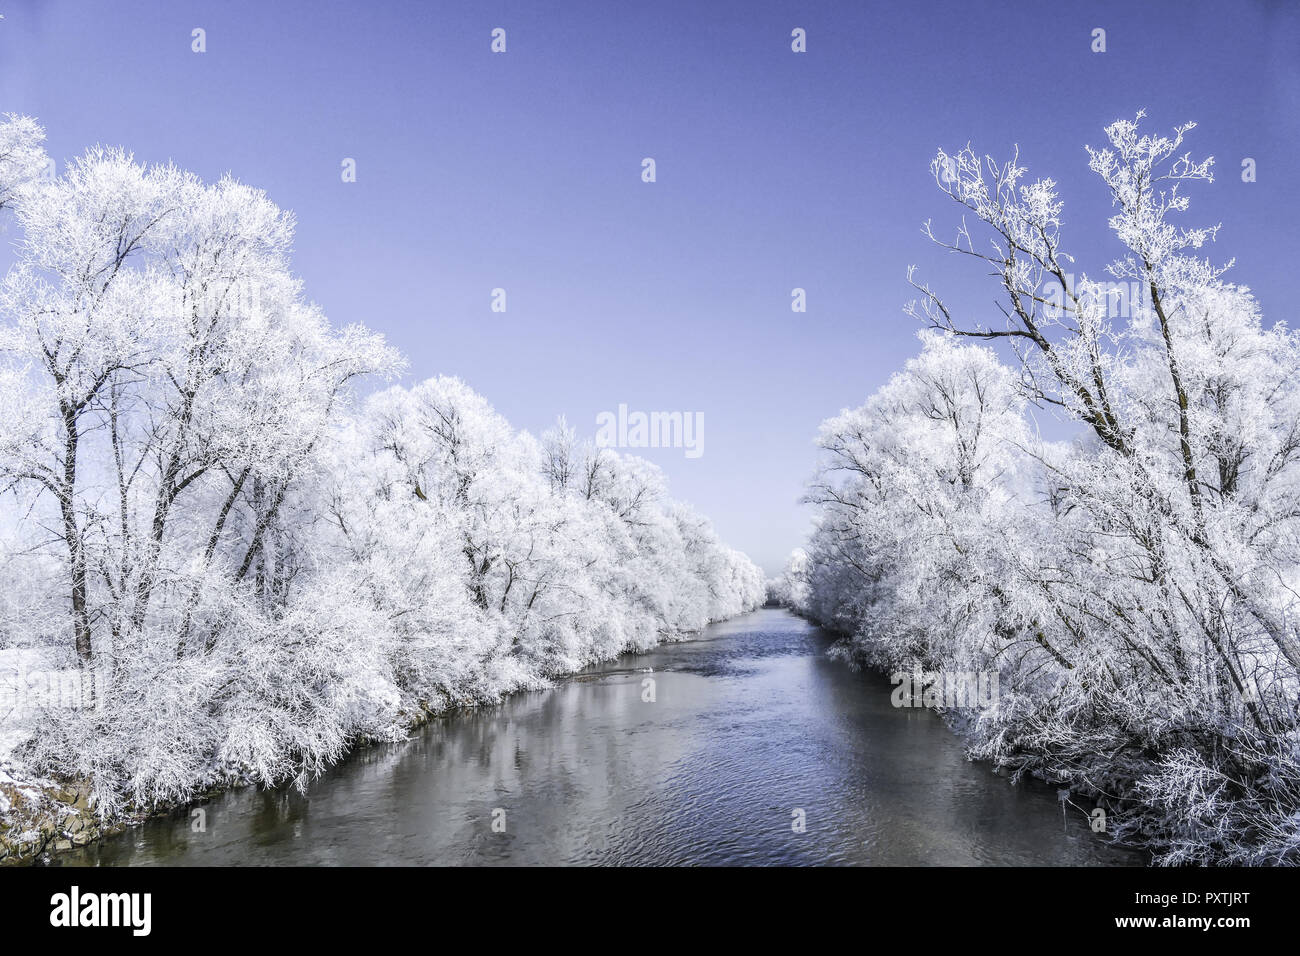 Raureif auf Bäumen an einem kalten Wintertag, Oberbayern, Bayern, Deutschland Stock Photo